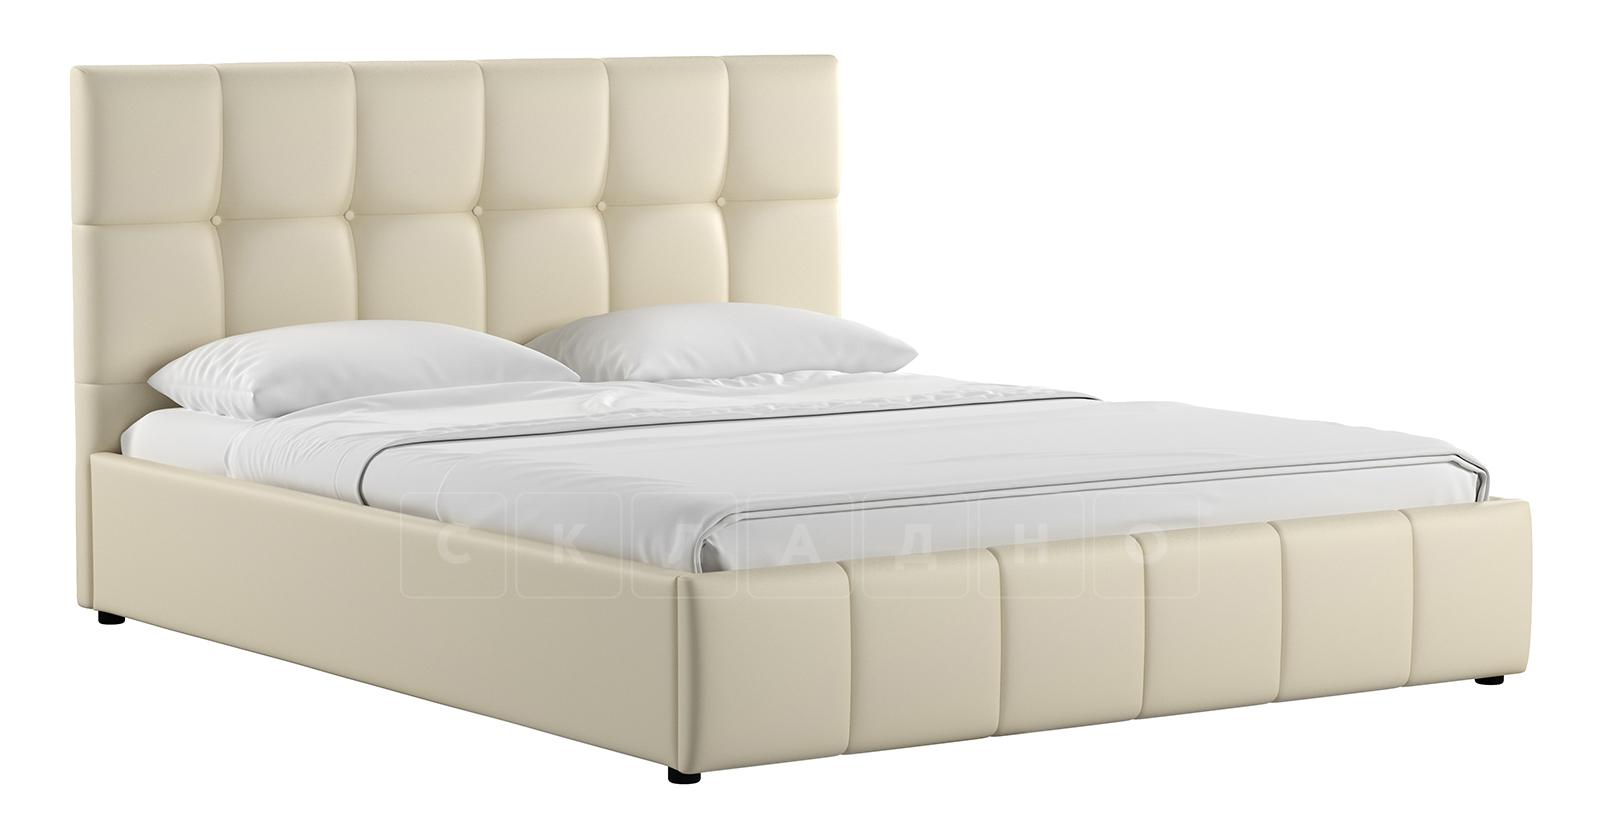 Мягкая кровать Хлоя 160 см сливочный с подъемным механизмом фото 1 | интернет-магазин Складно